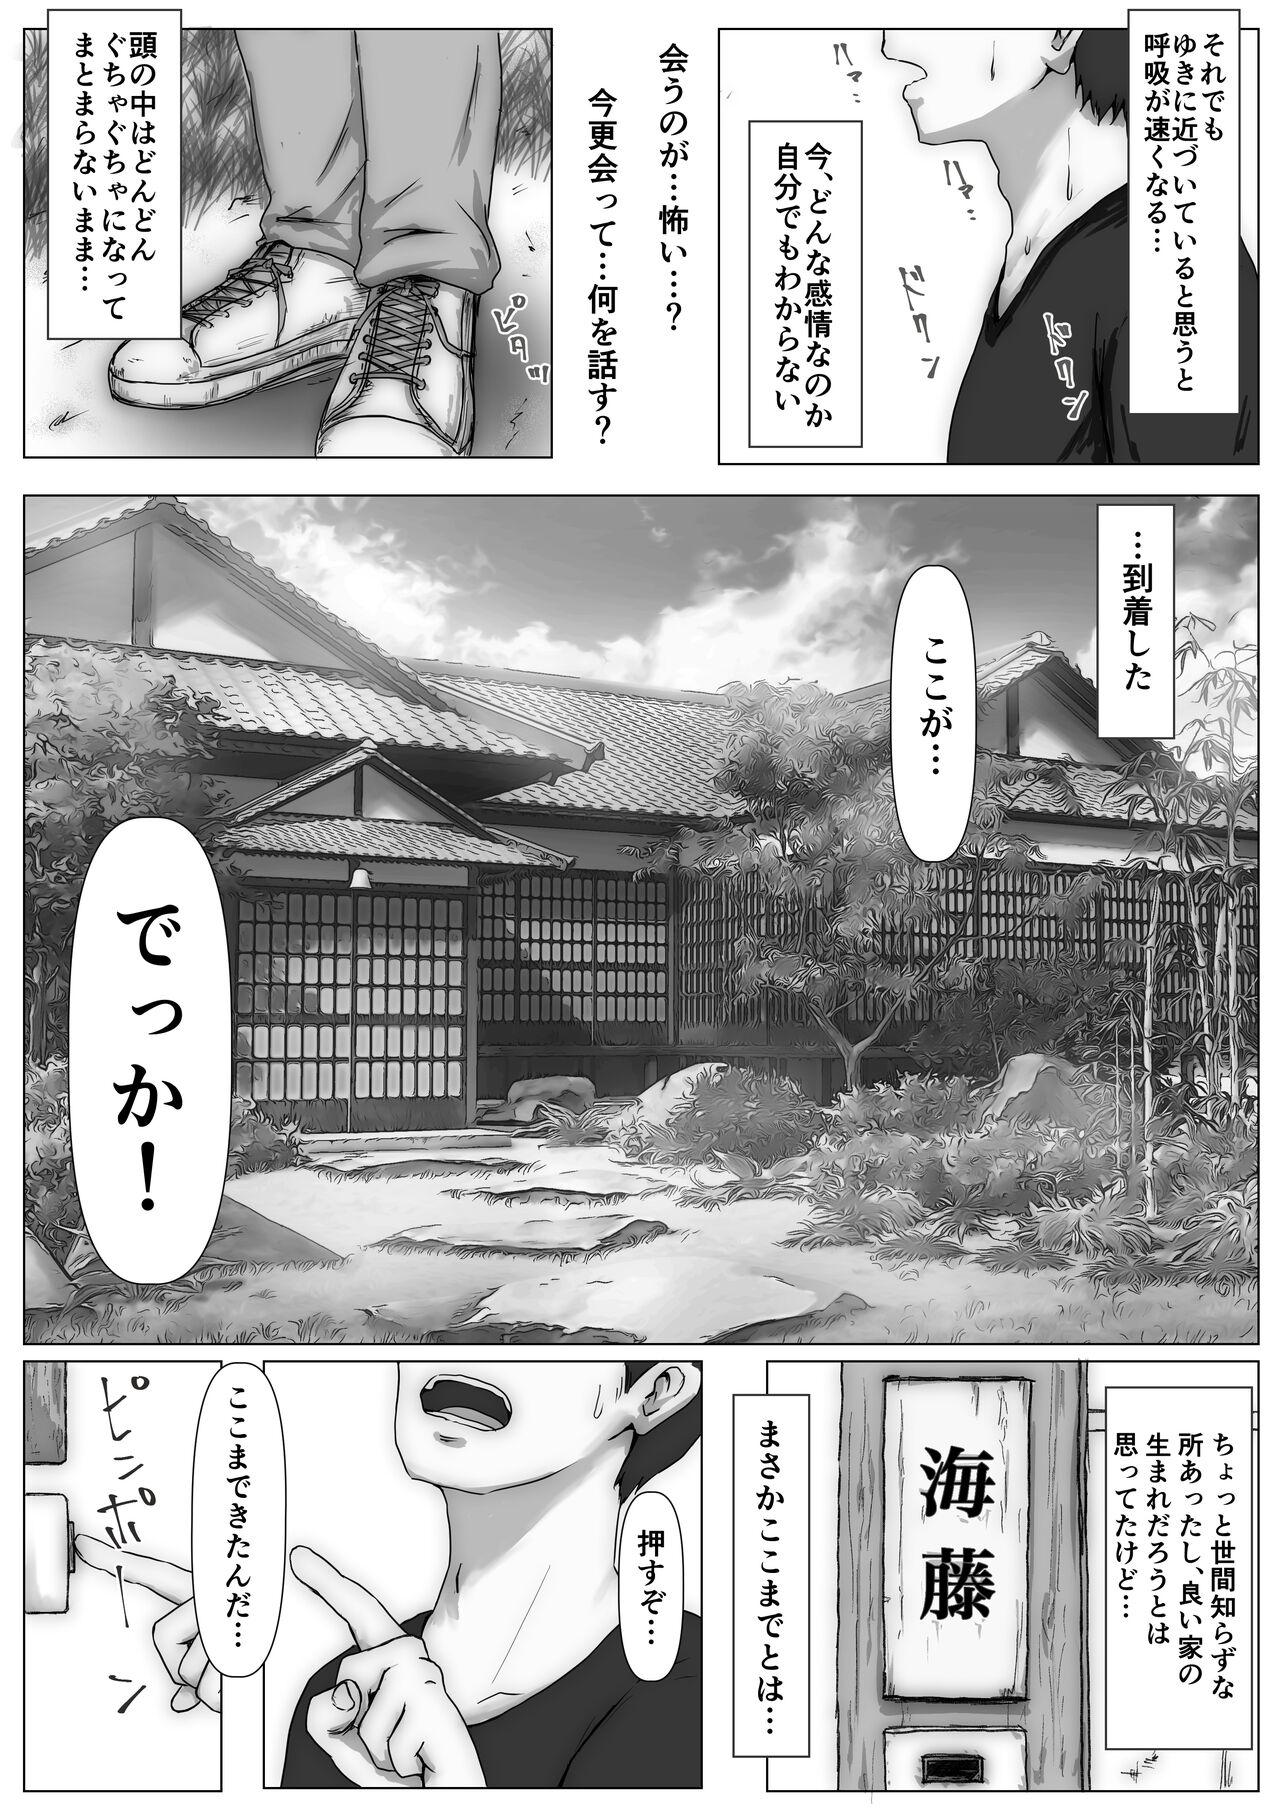 Dorm Honto no Kanojo 3 - Original Teenporno - Page 11